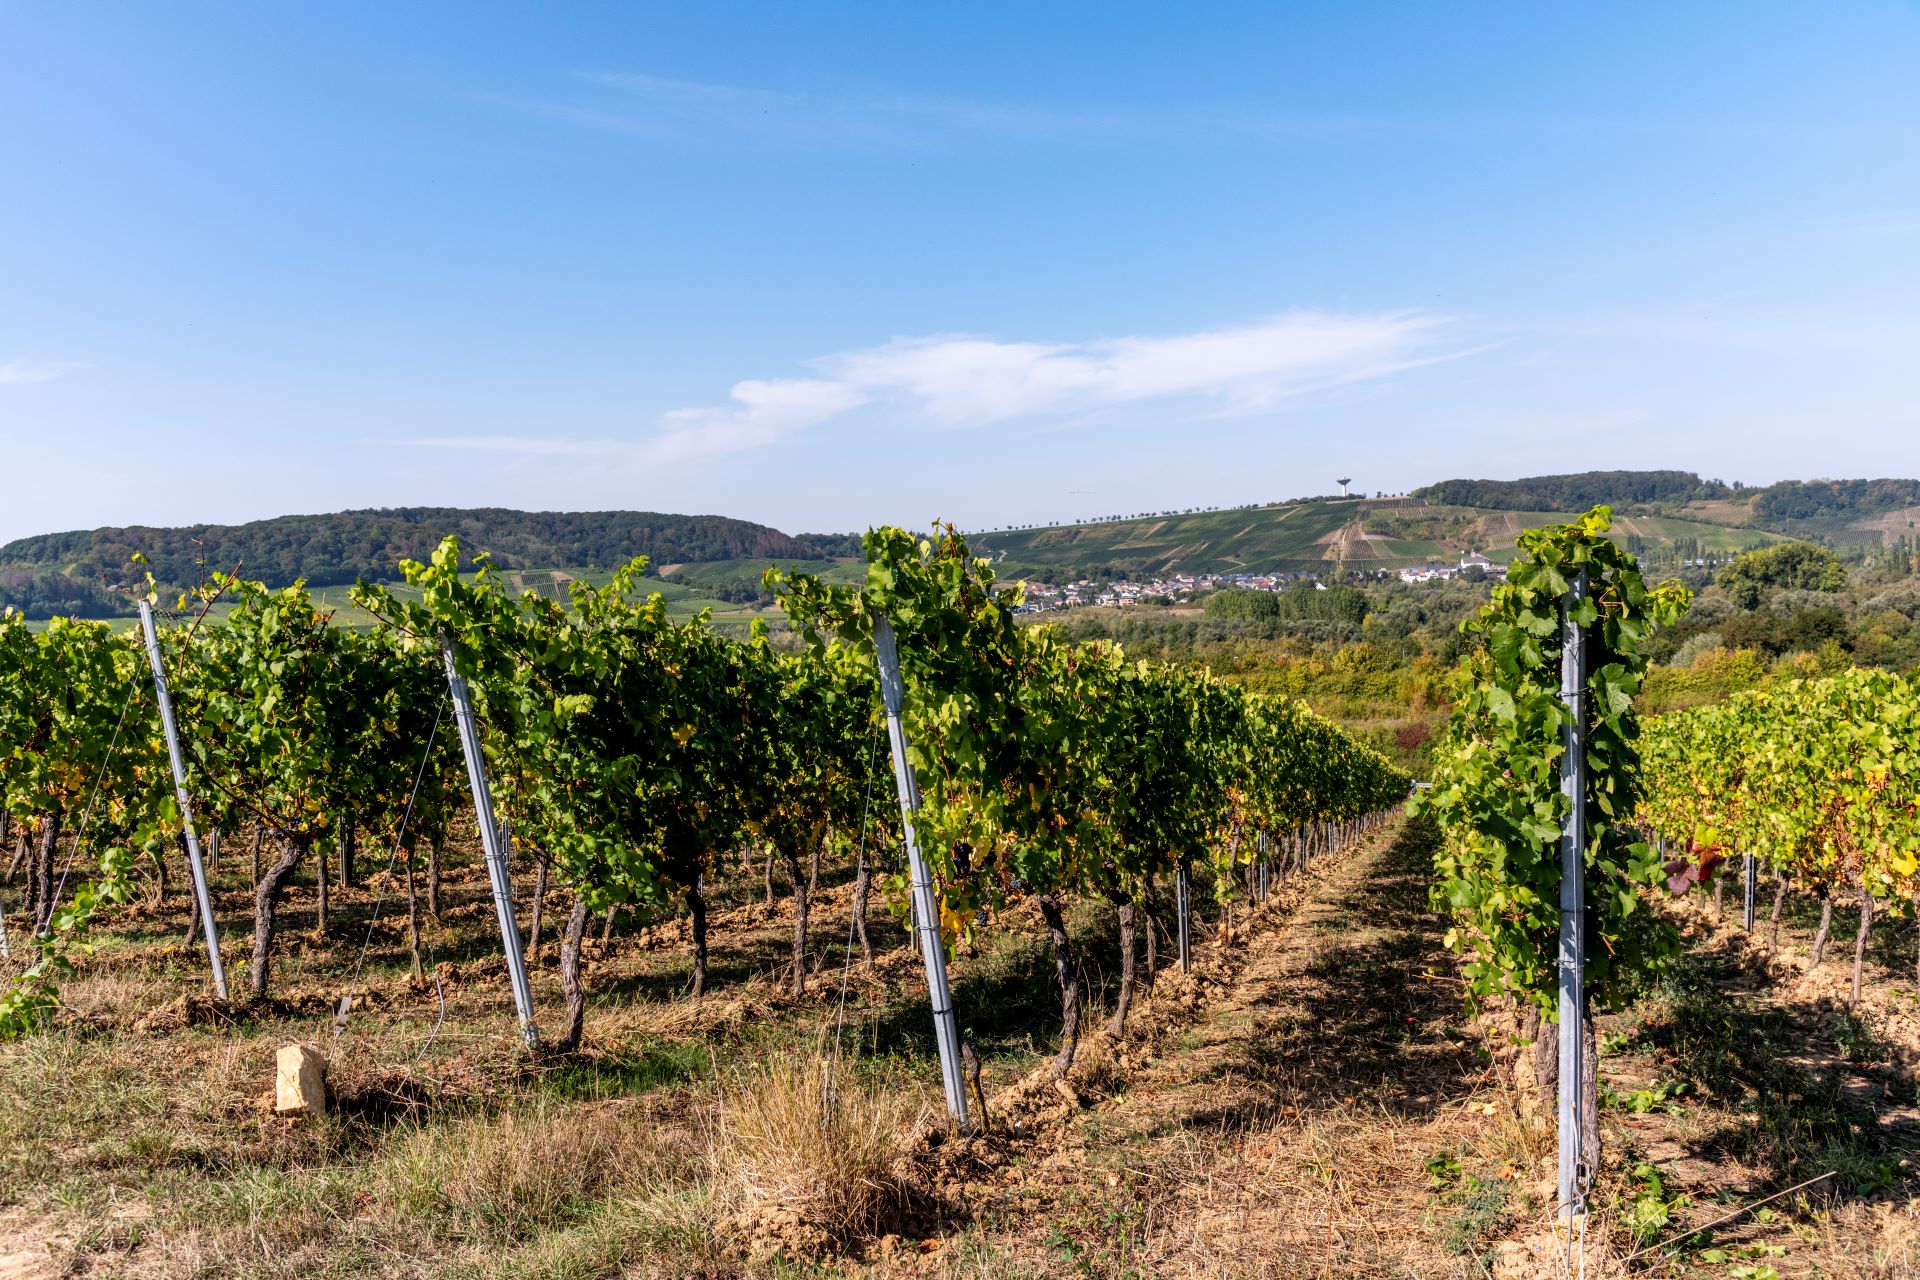 Reihen und Reihen von Weinstöcken sind vor einem blauen Himmel und grünem Hintergrund abgebildet.